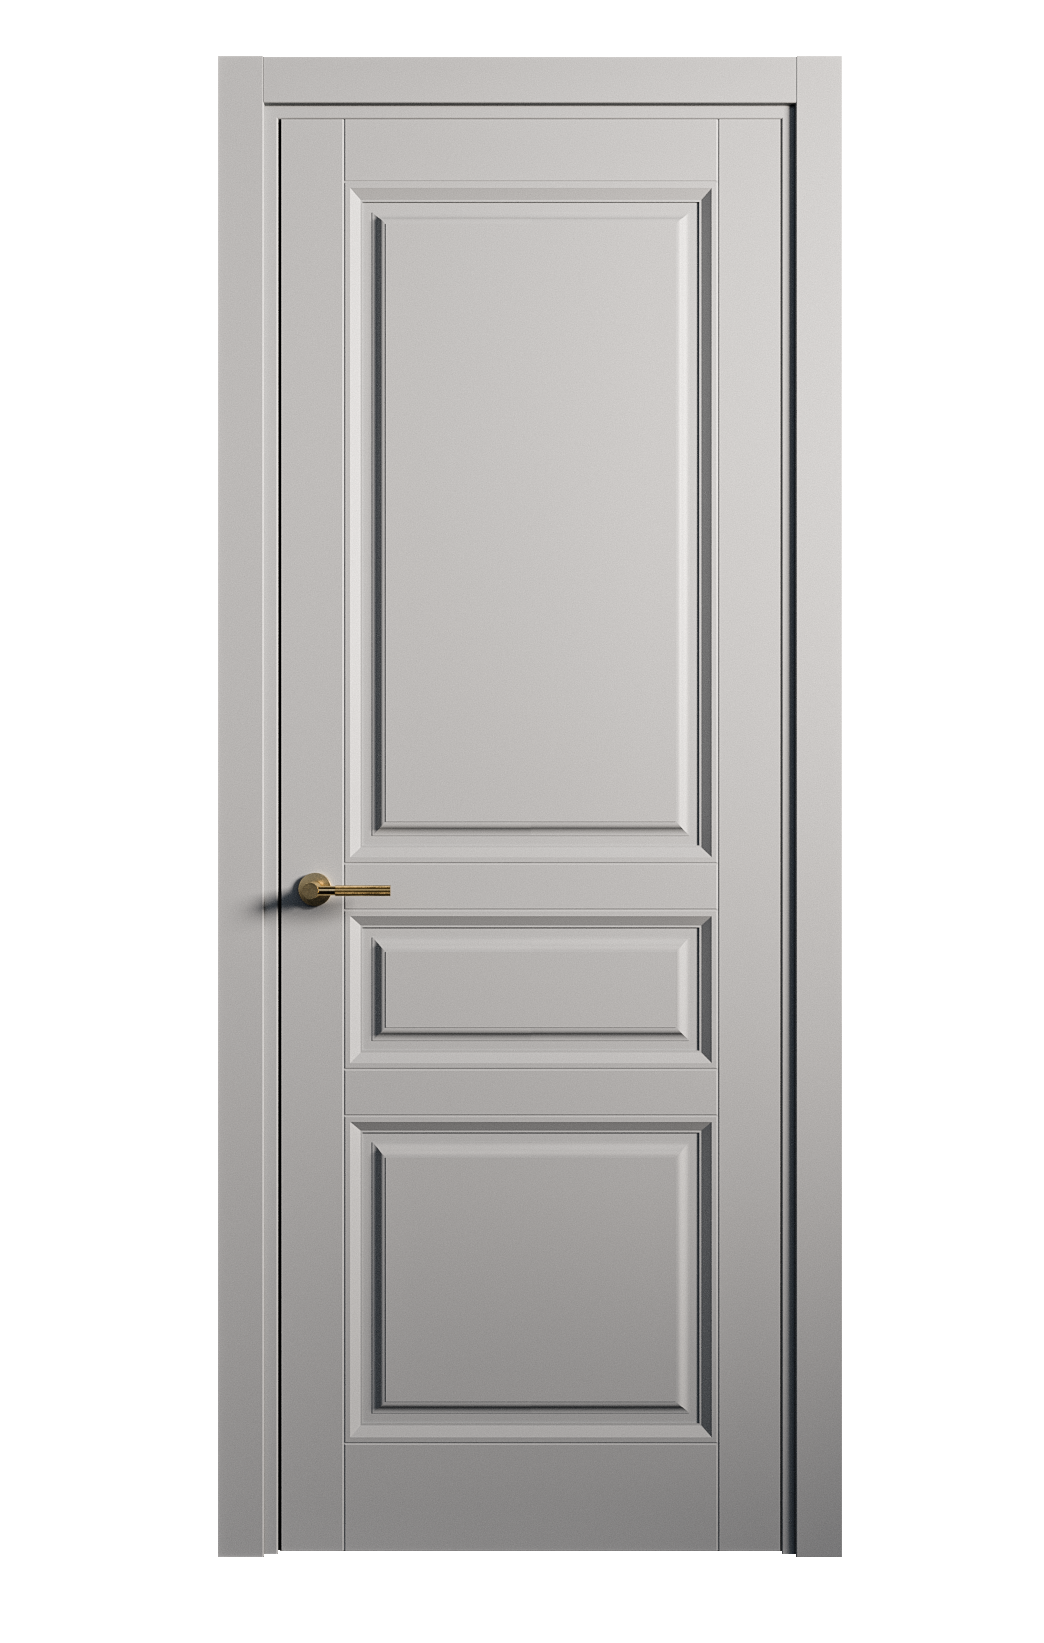 Межкомнатная дверь Venezia-2 глухая эмаль ral 7040 25790